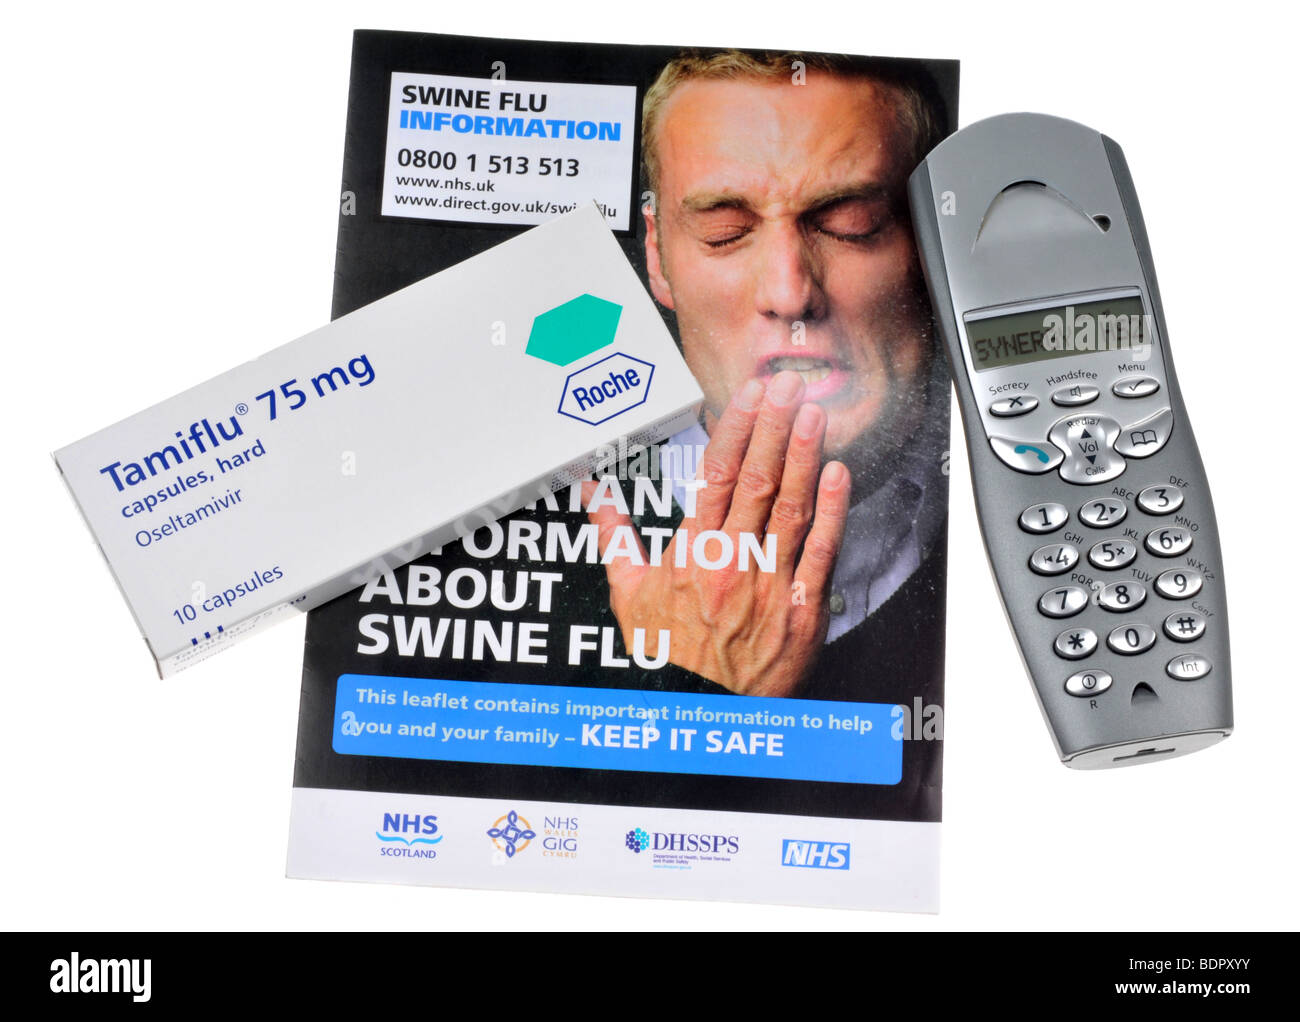 Tamiflu Kapseln zur Behandlung von "Schweinegrippe" Stockfoto